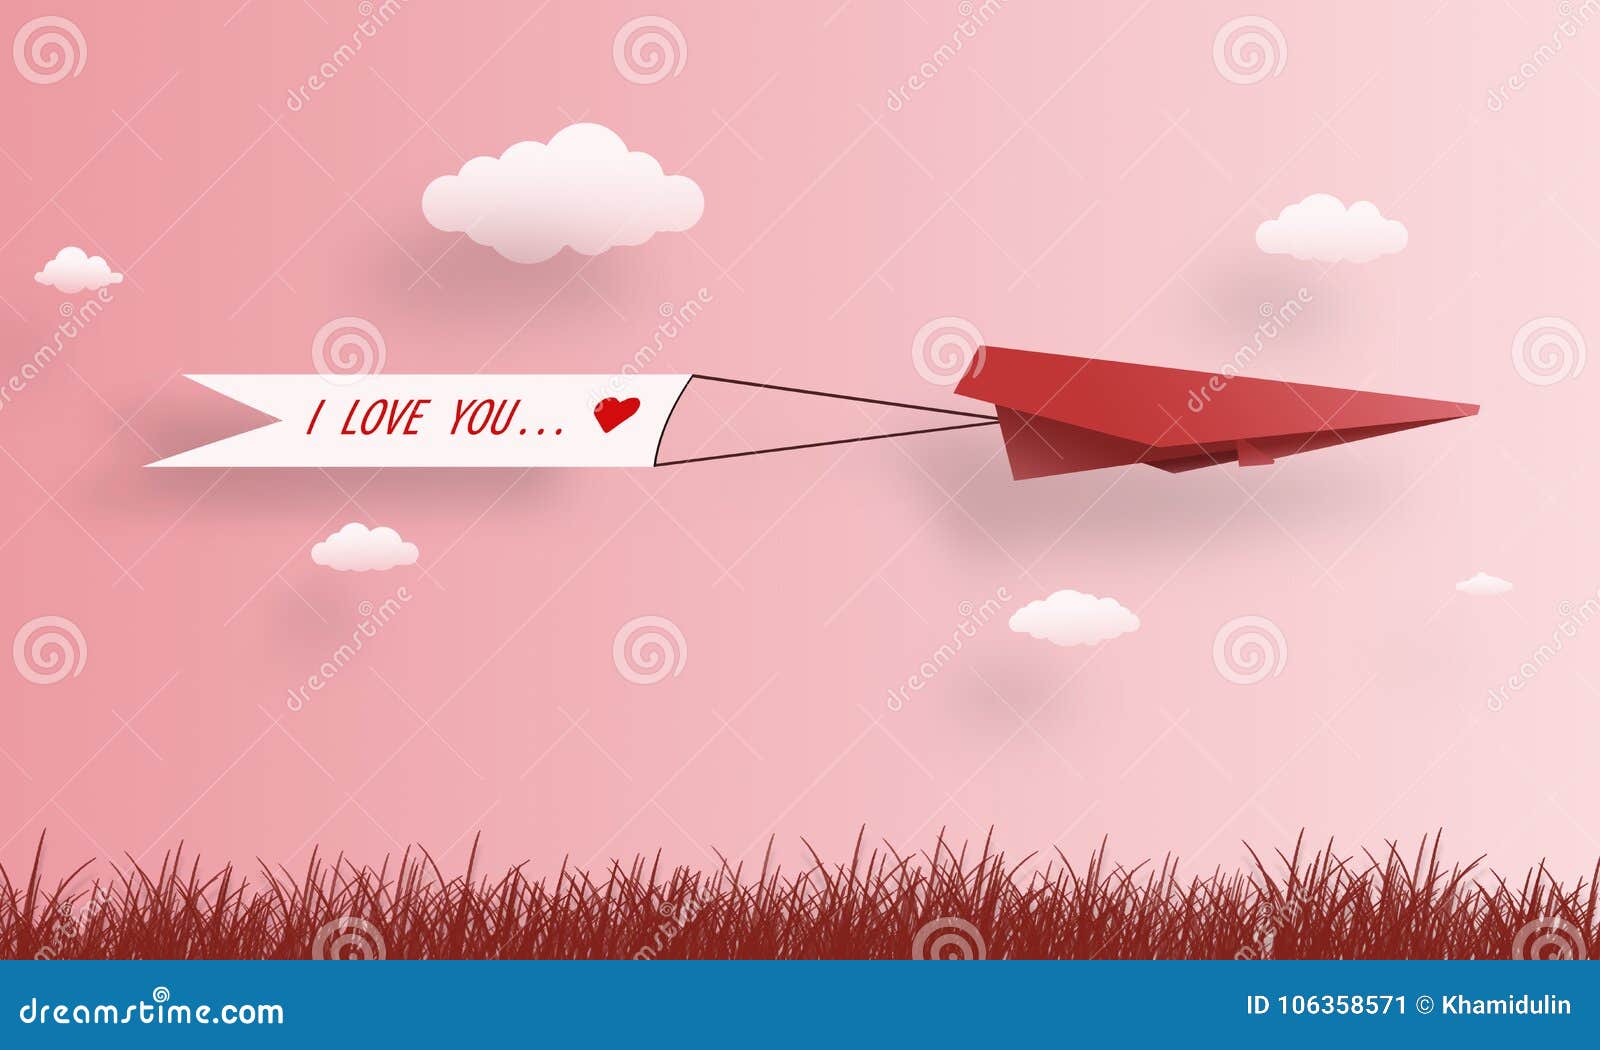 Самолет бумажный я думал королева теперь. Бумажный самолетик. Декорации бумажный самолетик с сердечком. Розовый бумажный самолетик. Любовная открытка с бумажным самолетиком.